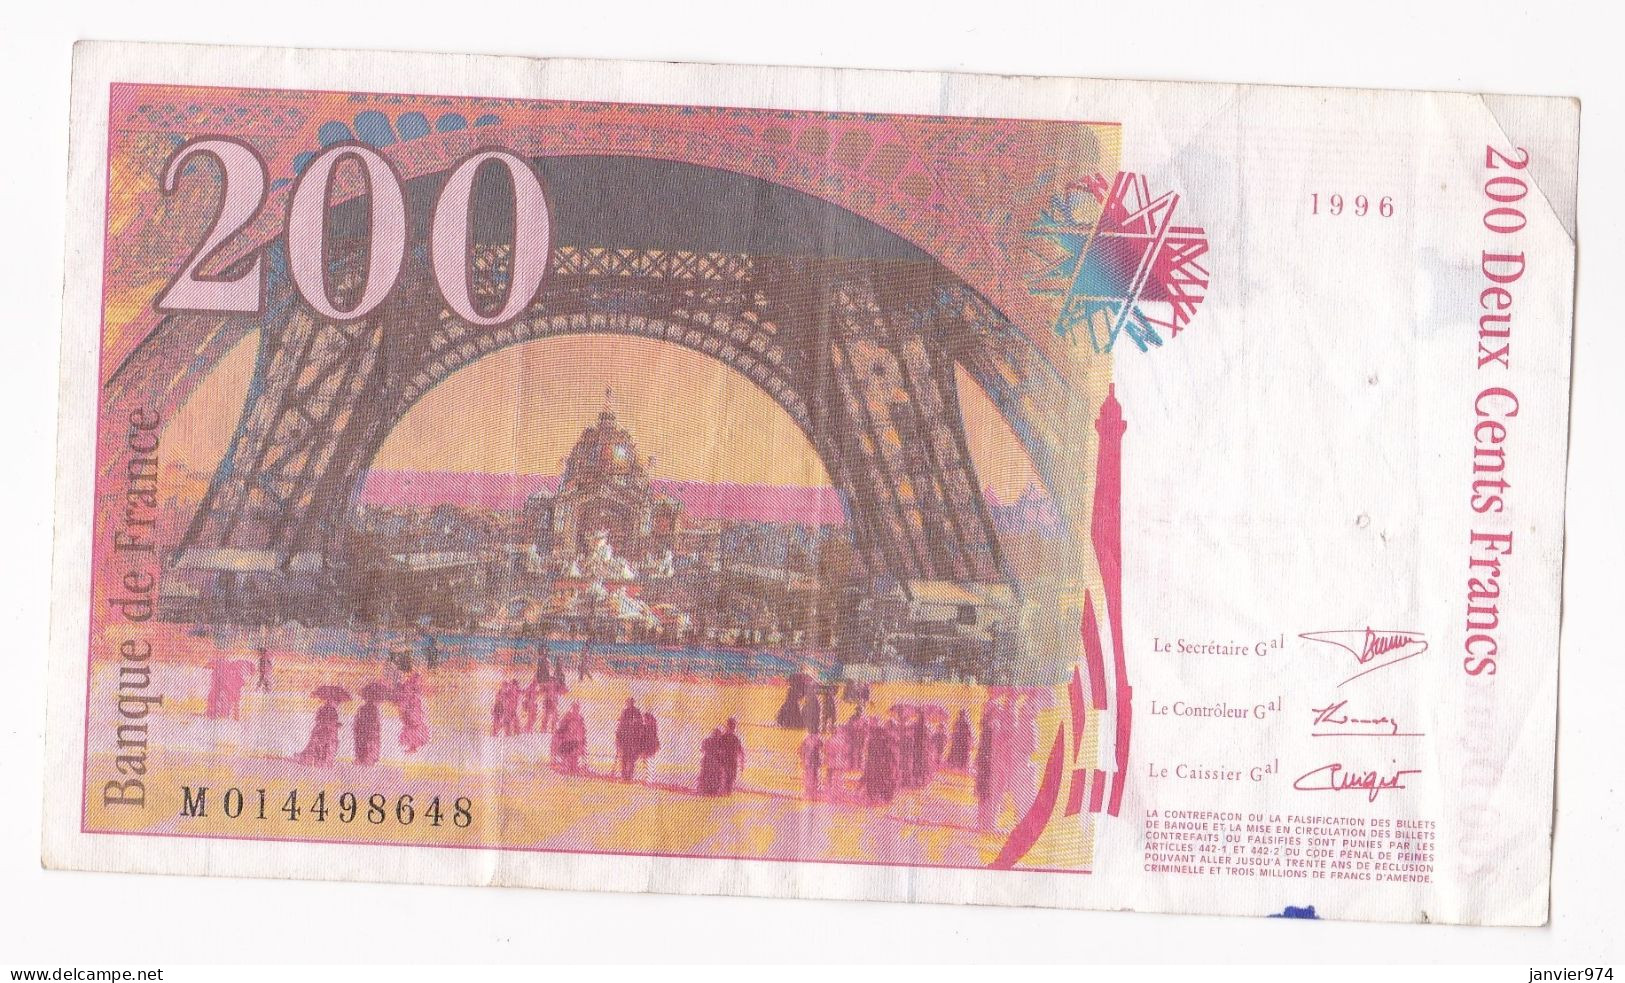 200 Francs Eiffel 1996, Alphabet : M 014498648, Tres Beau Billet - 200 F 1995-1999 ''Eiffel''